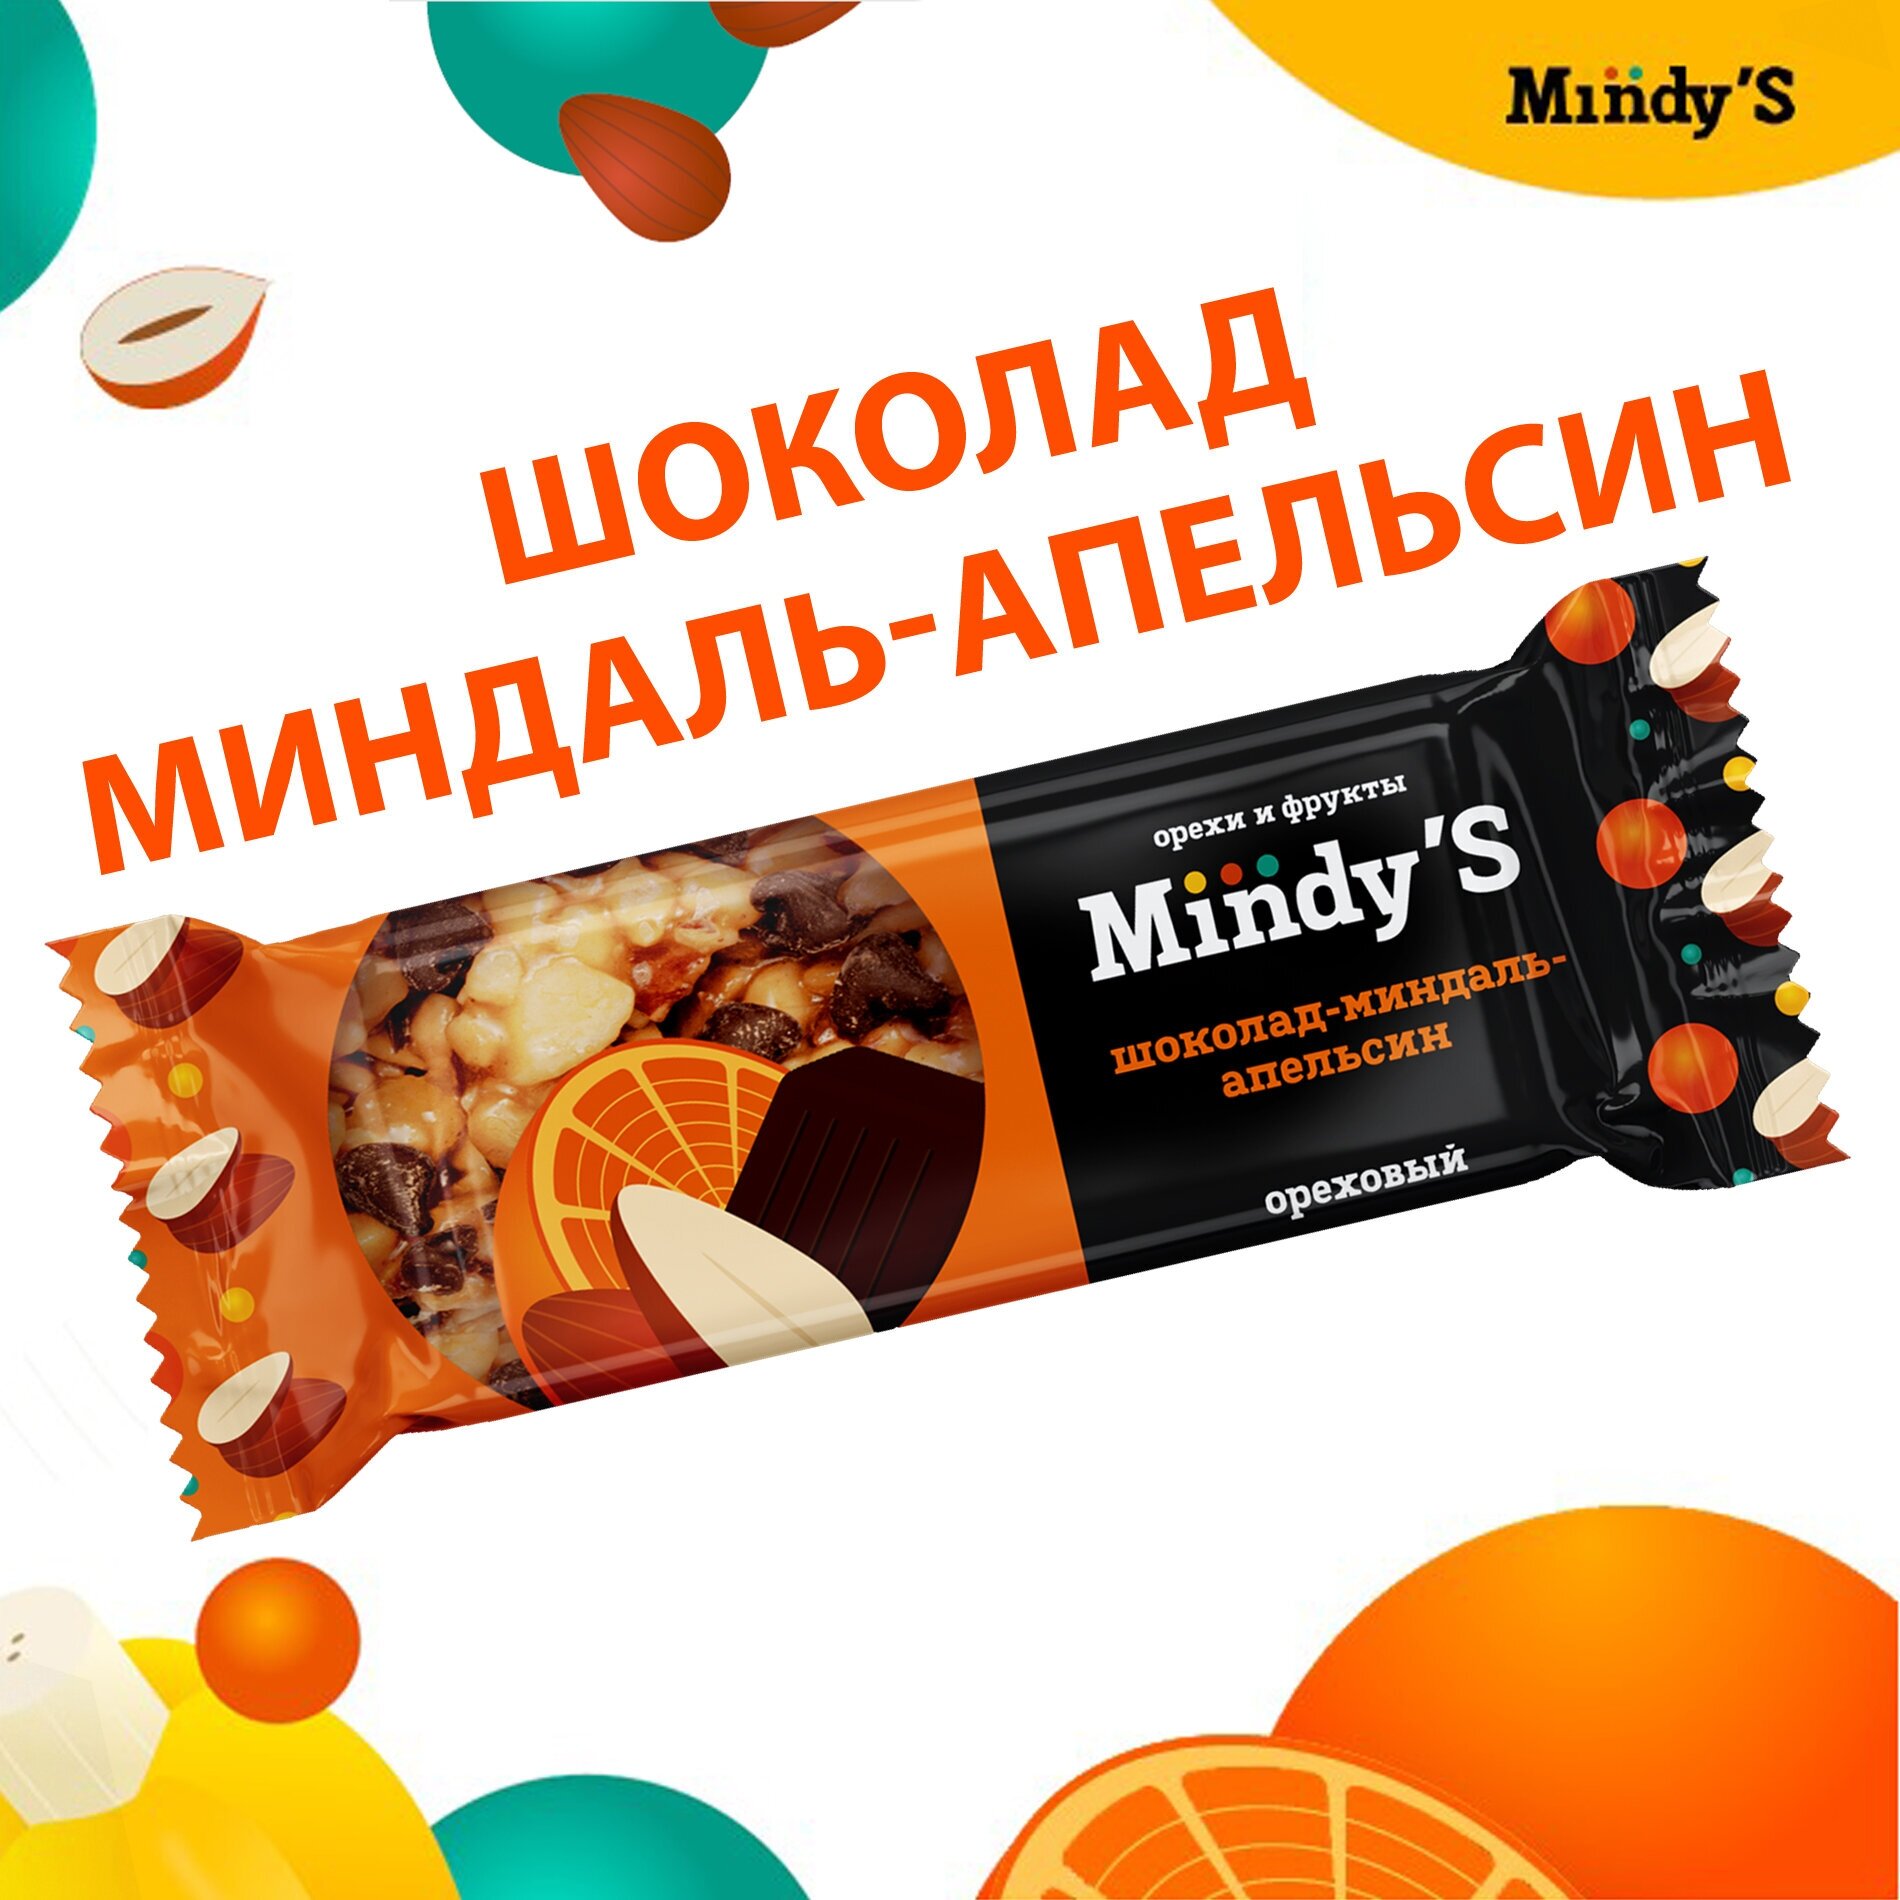 Батончики ореховые "Mindy'S" 30 штук, 3 вида орехов